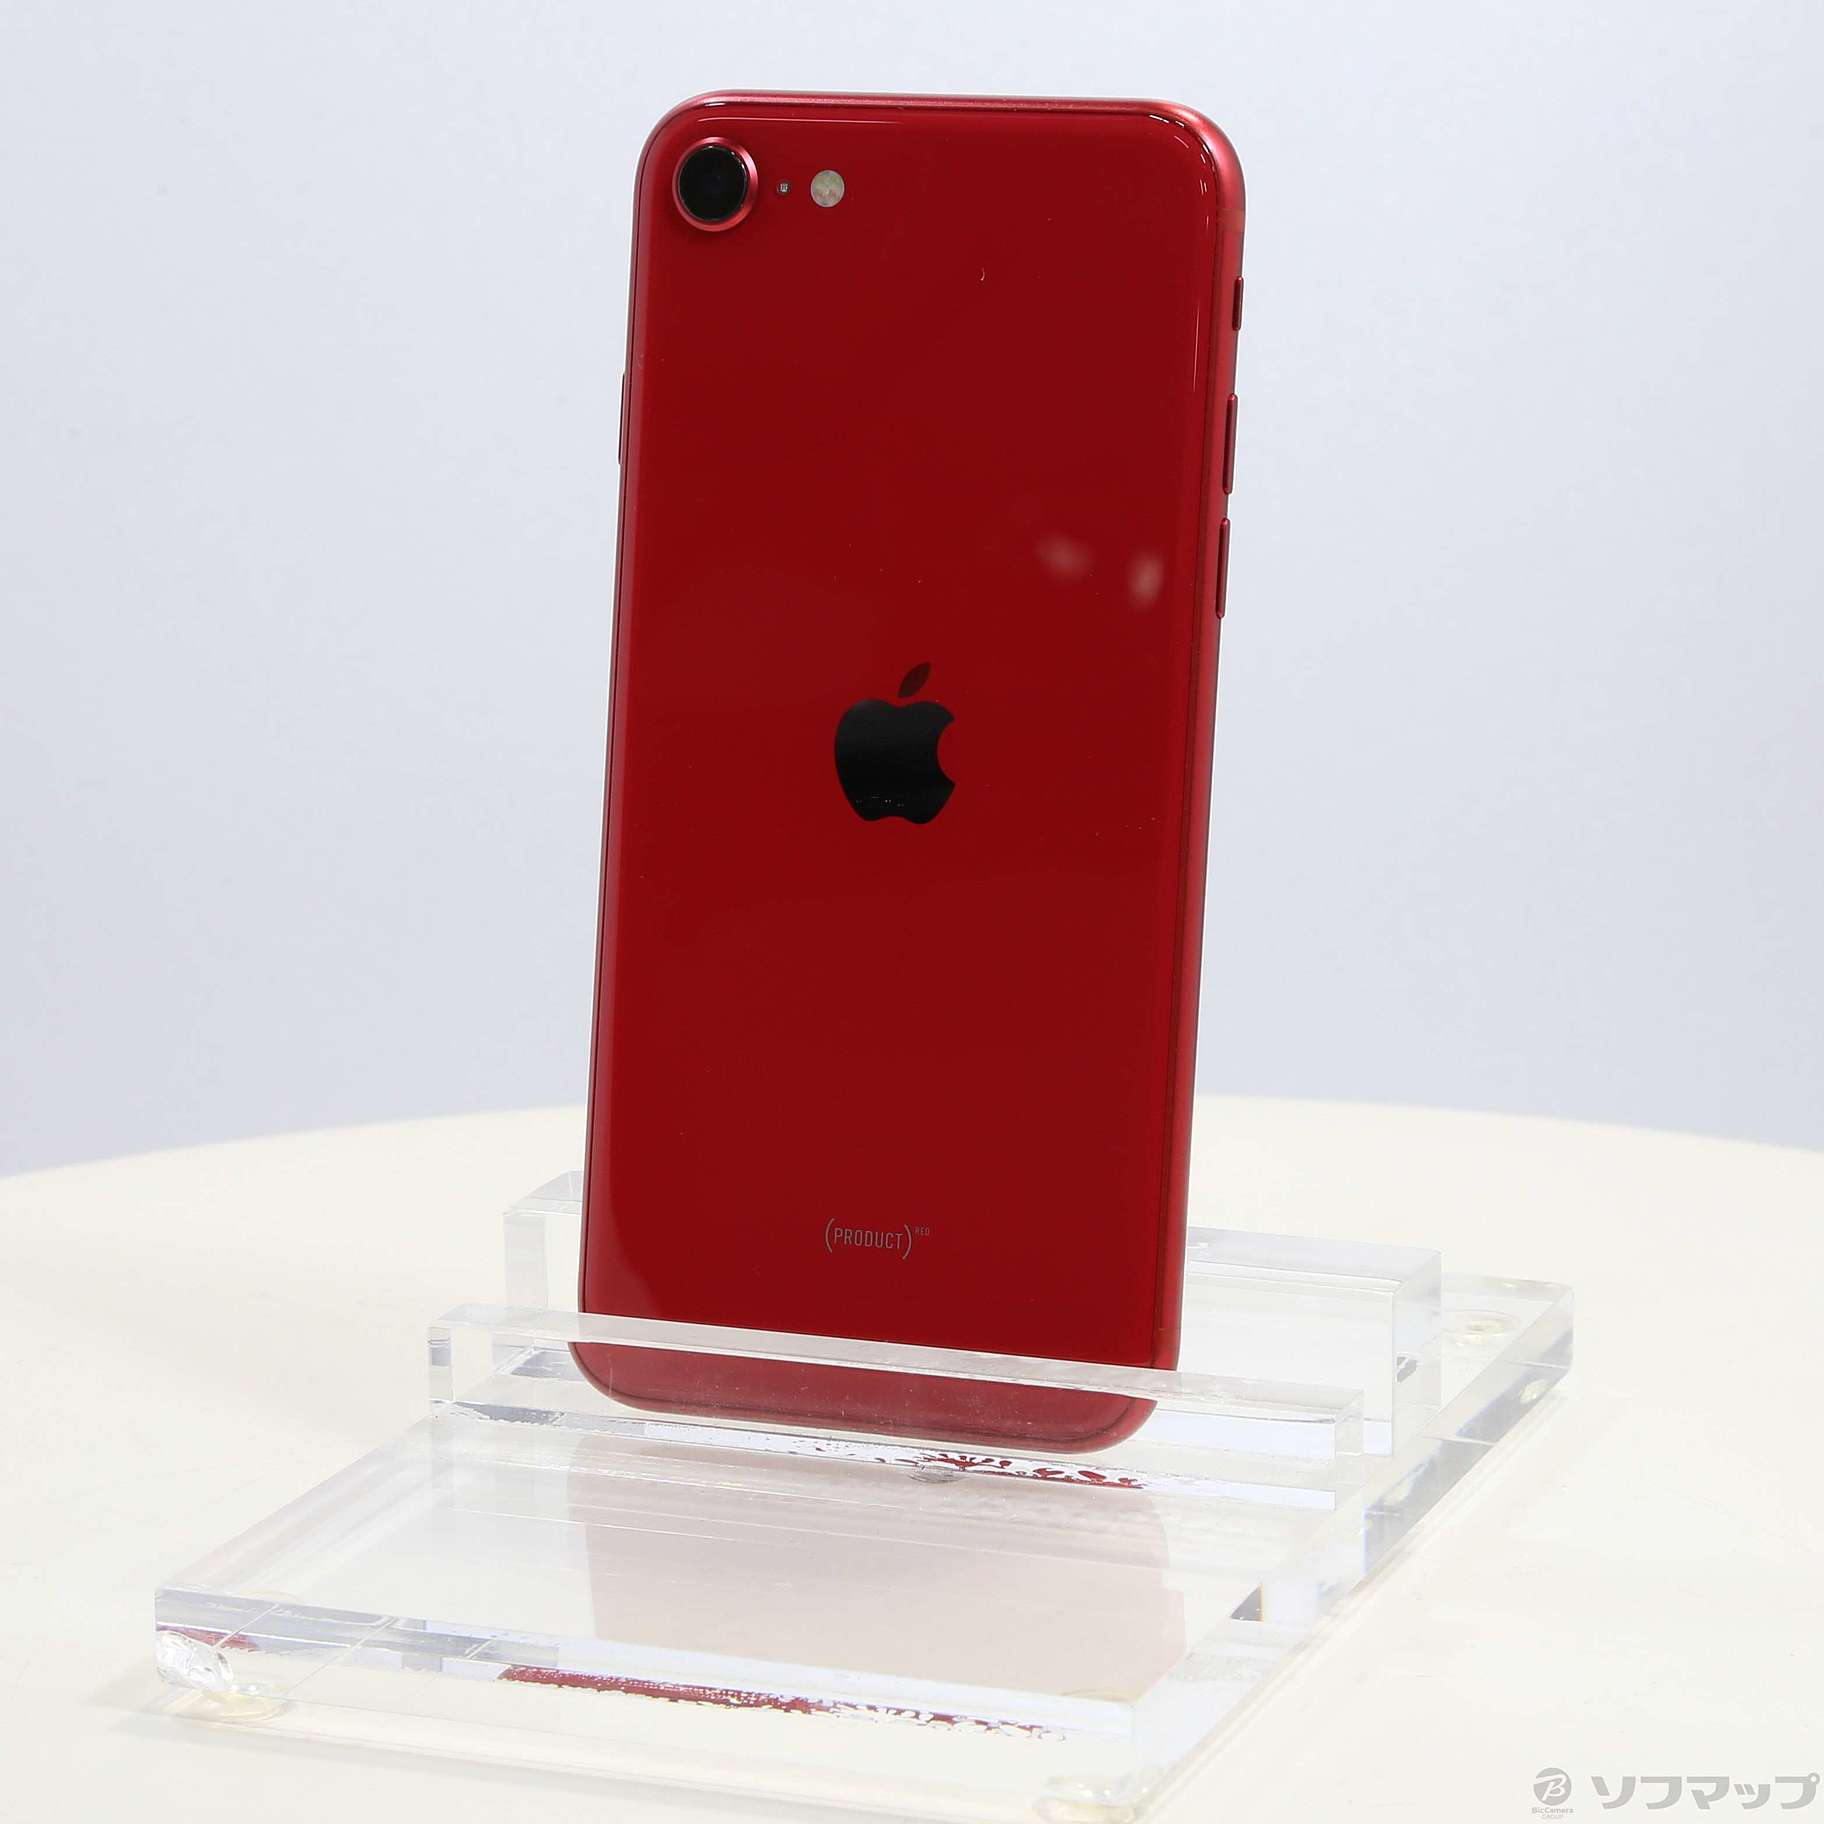 iPhone SE 第2世代 64GB ブラック【展示品】 - スマートフォン本体